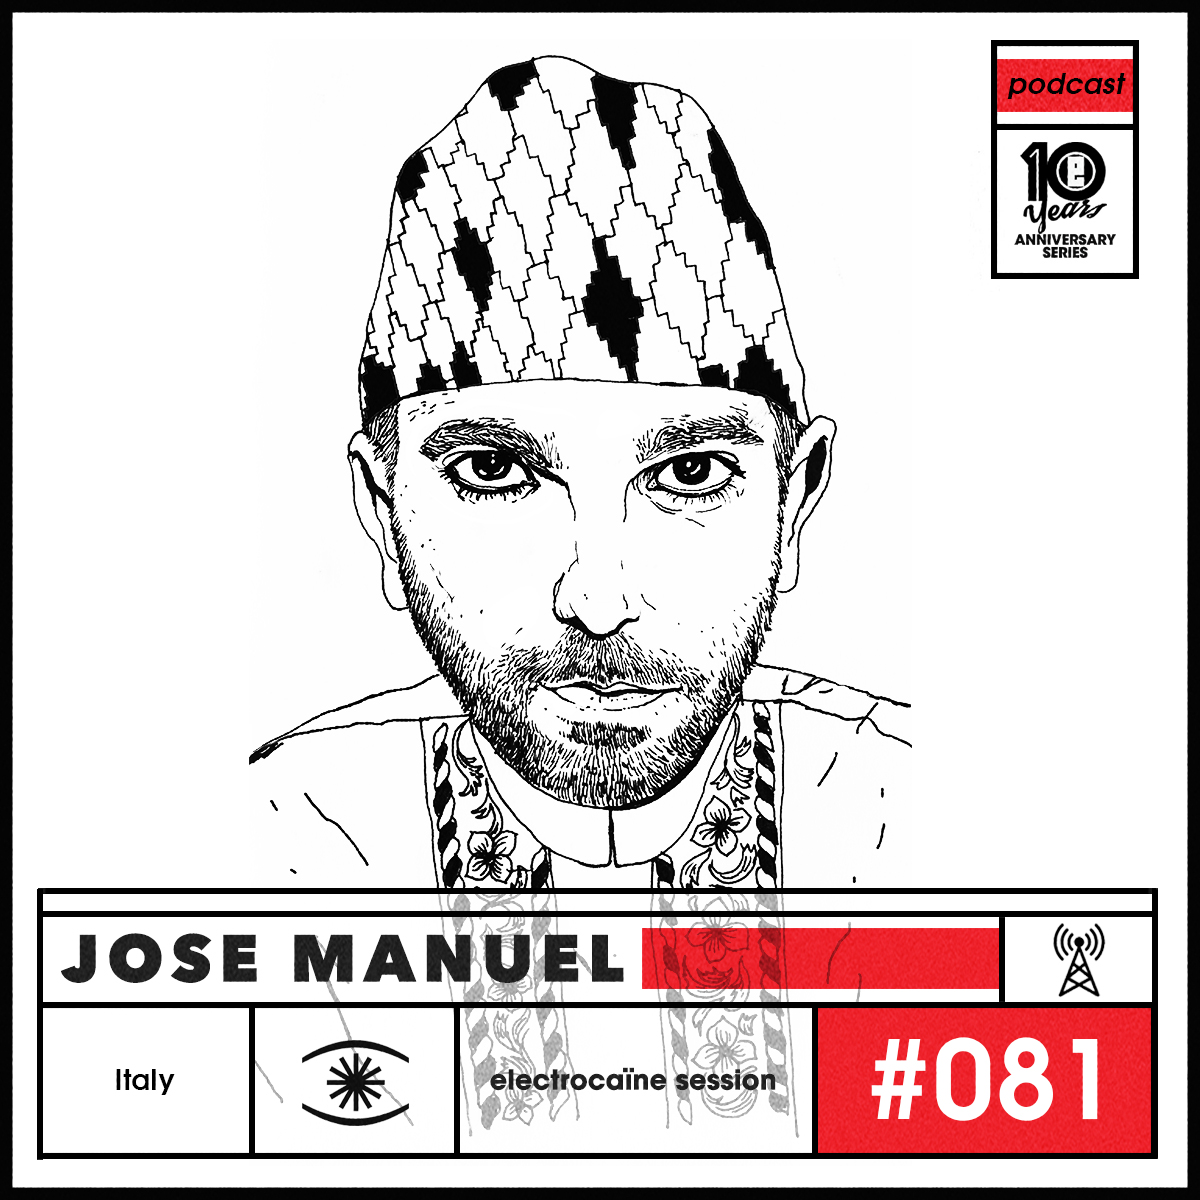 session #081 - José Manuel